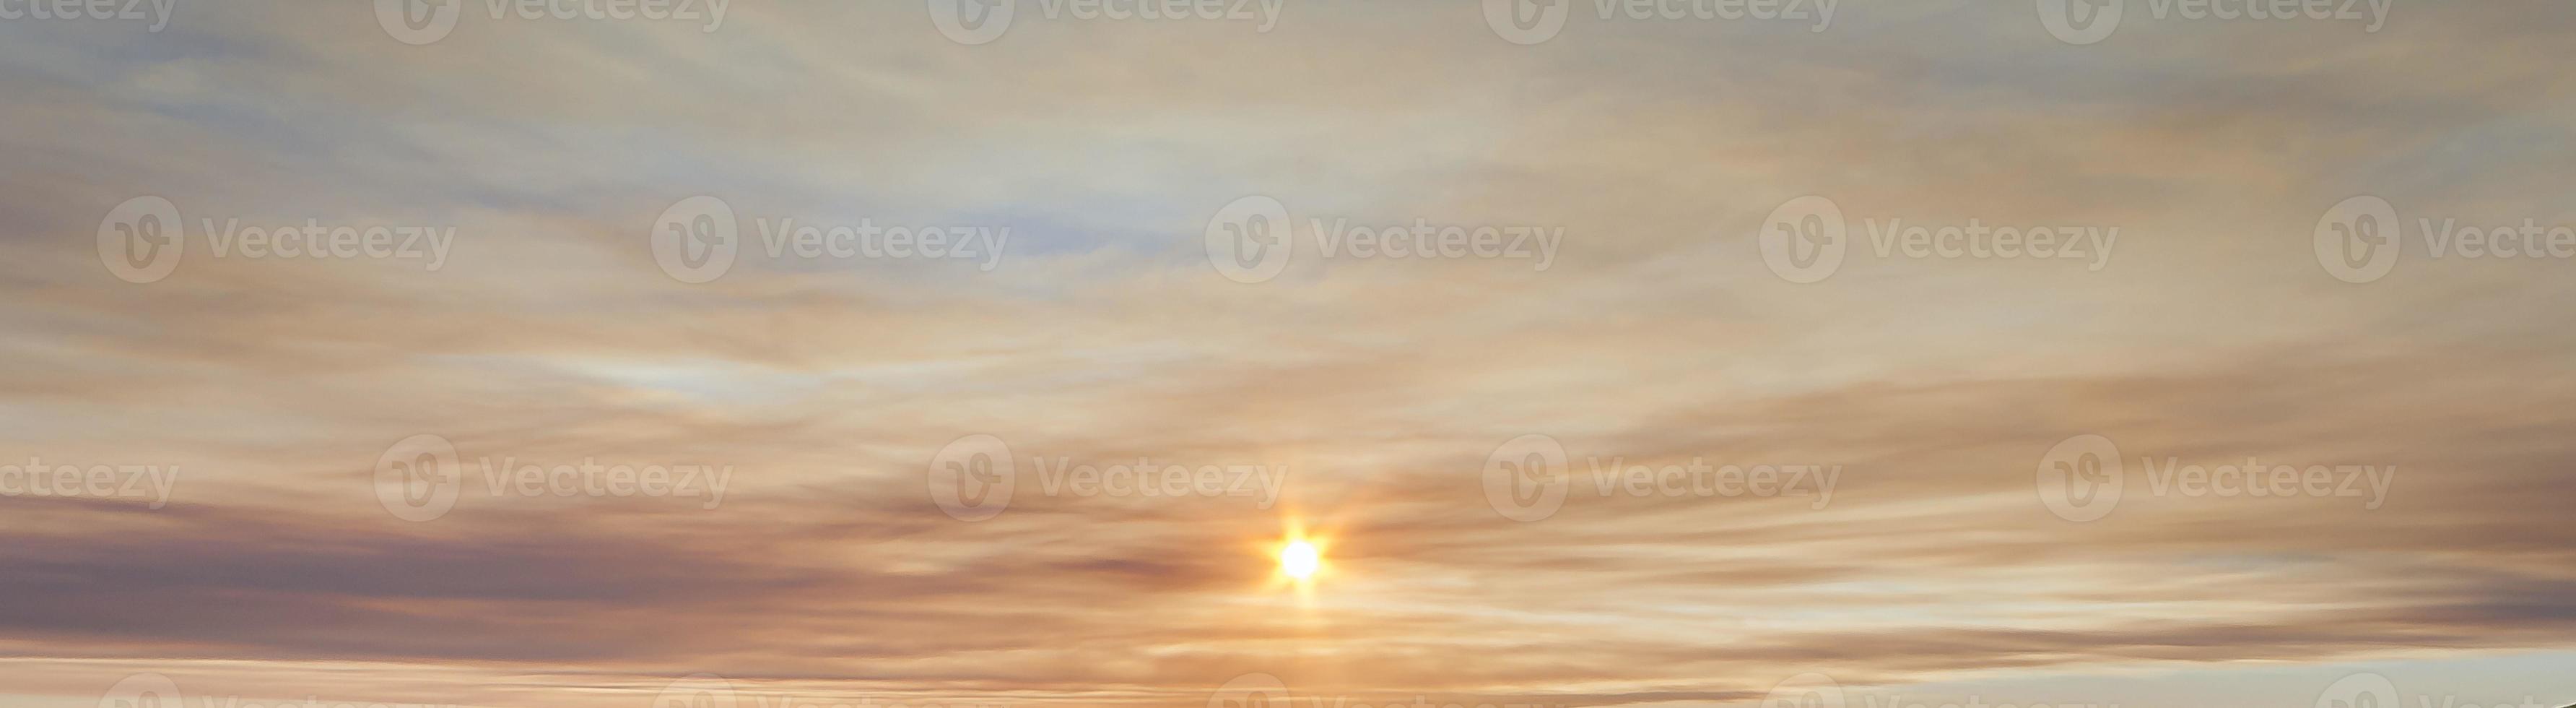 imagen de cielo dramático y colorido con sol durante la puesta de sol foto